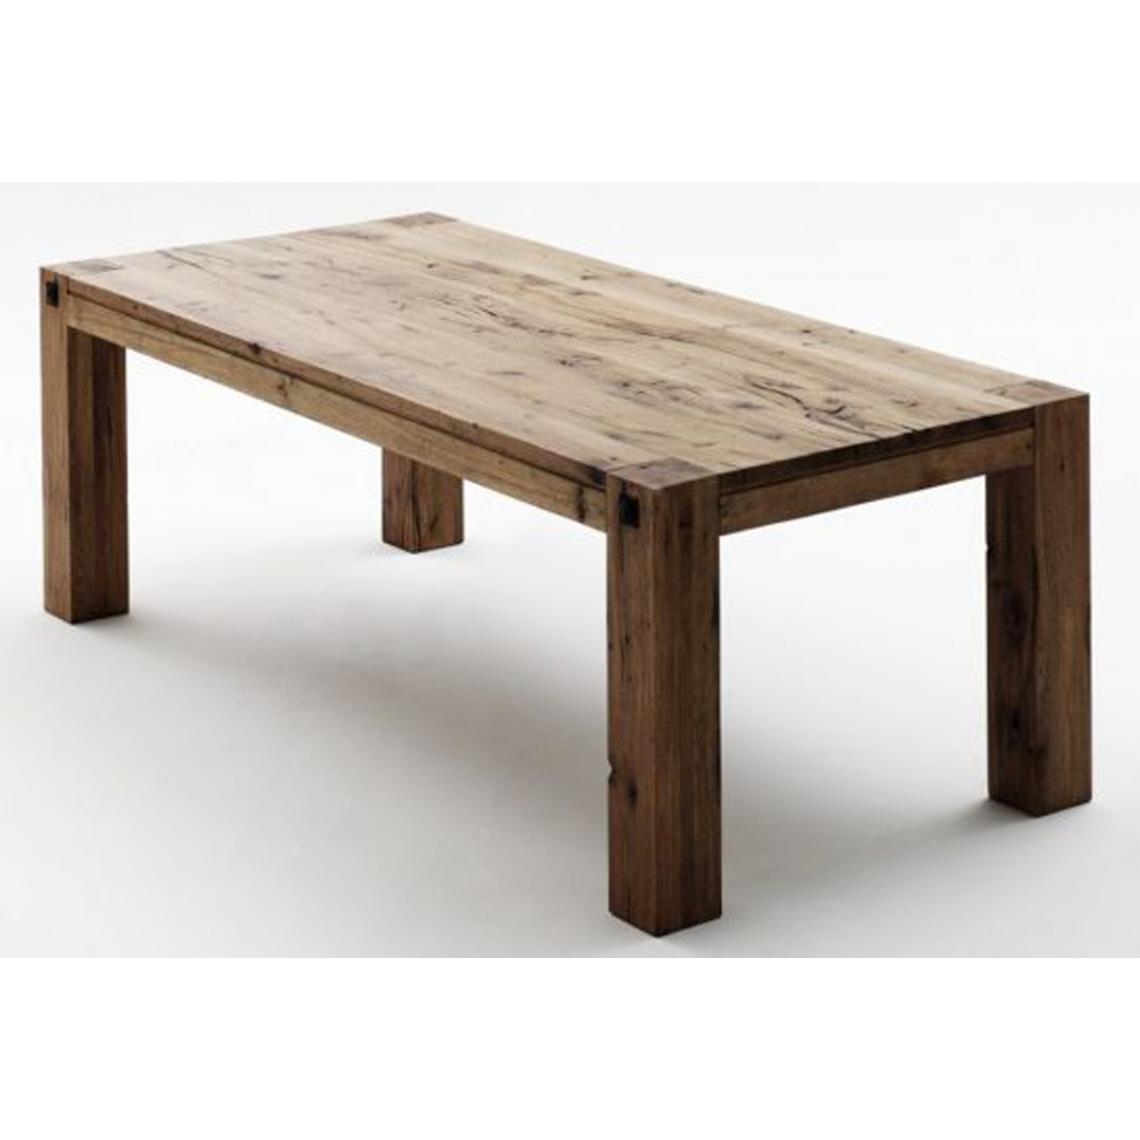 Pegane - Table à manger en chêne massif Bassano laqué mat - L.260 x H.76 x P.100 cm - Tables à manger